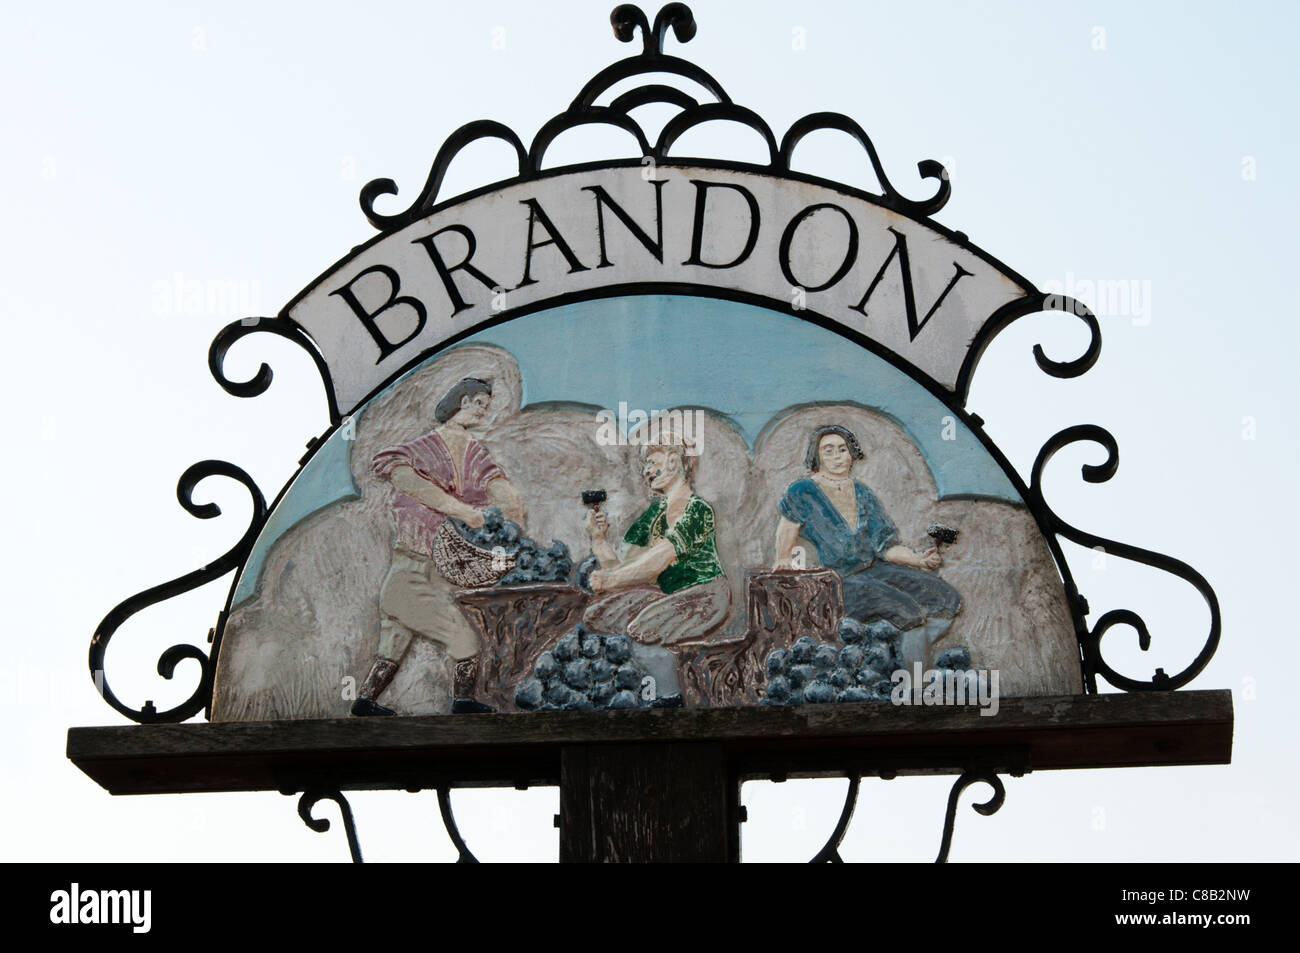 La città segno per Brandon mostra la selce knappers al lavoro - una volta una industria locale. Foto Stock